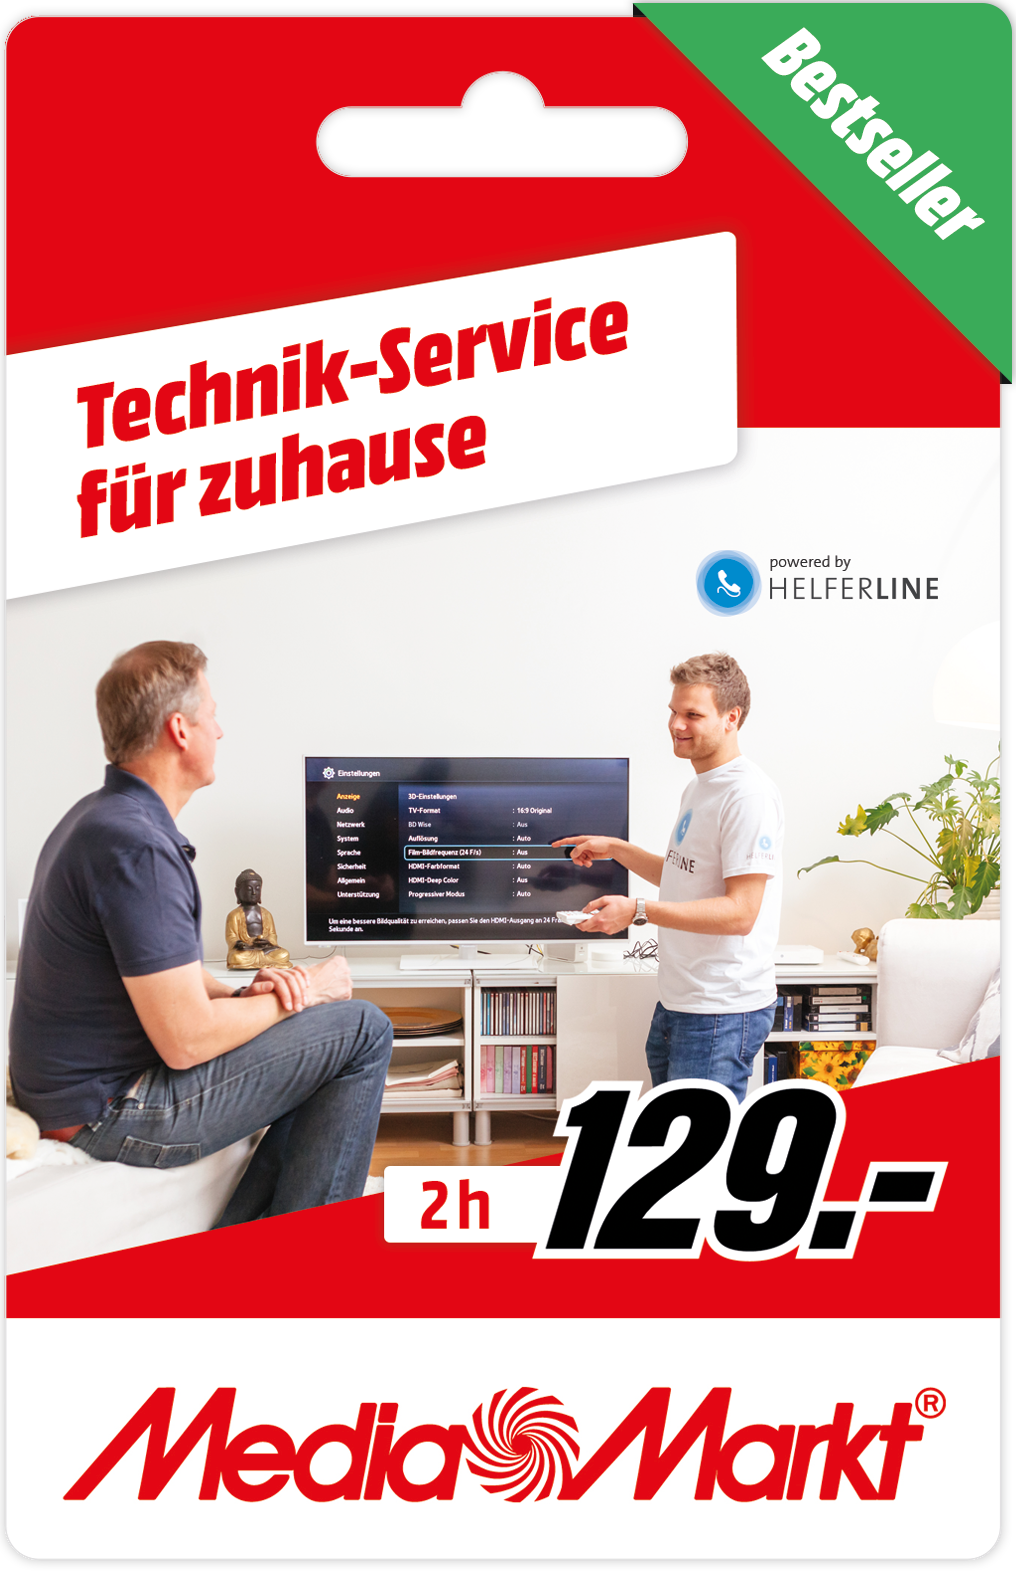 2h MediaMarkt Technik-Service bei Ihnen Zuhause